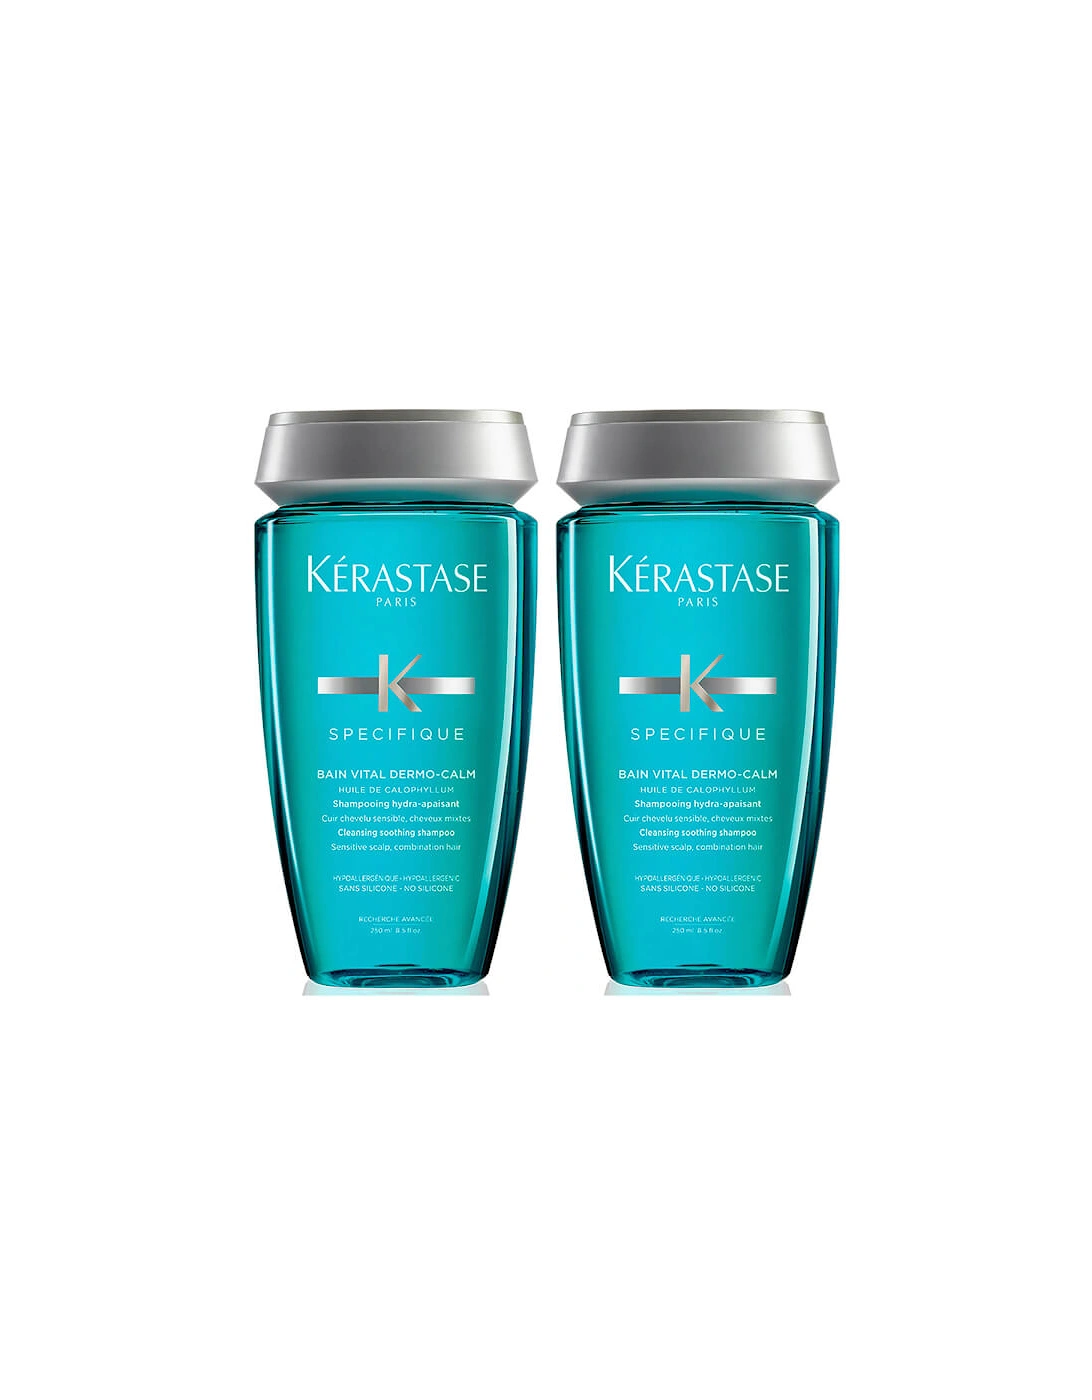 Kérastase Specifique Dermo-Calm Bain Vital Shampoo 250ml Duo - Kerastase, 2 of 1